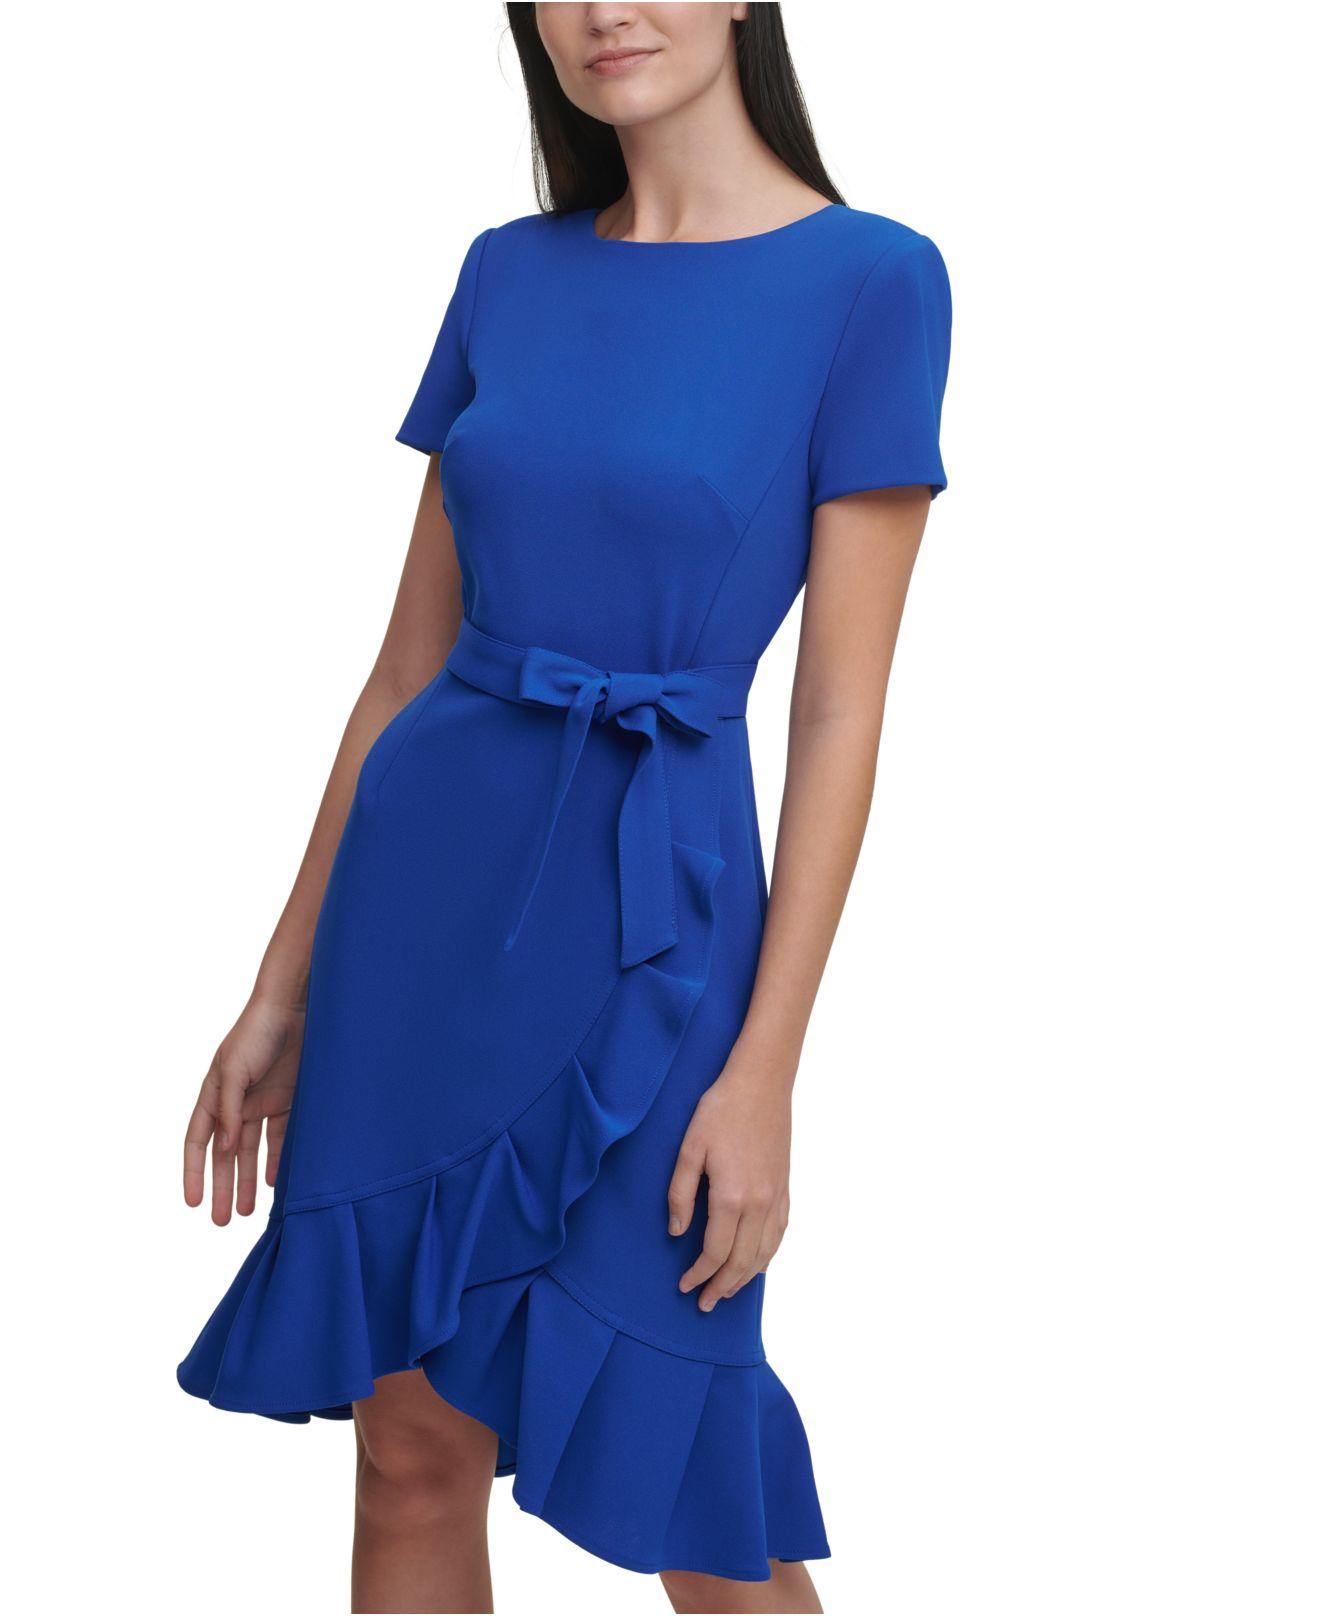 Actualizar 100+ imagen calvin klein long blue dress - Giaoduchtn.edu.vn